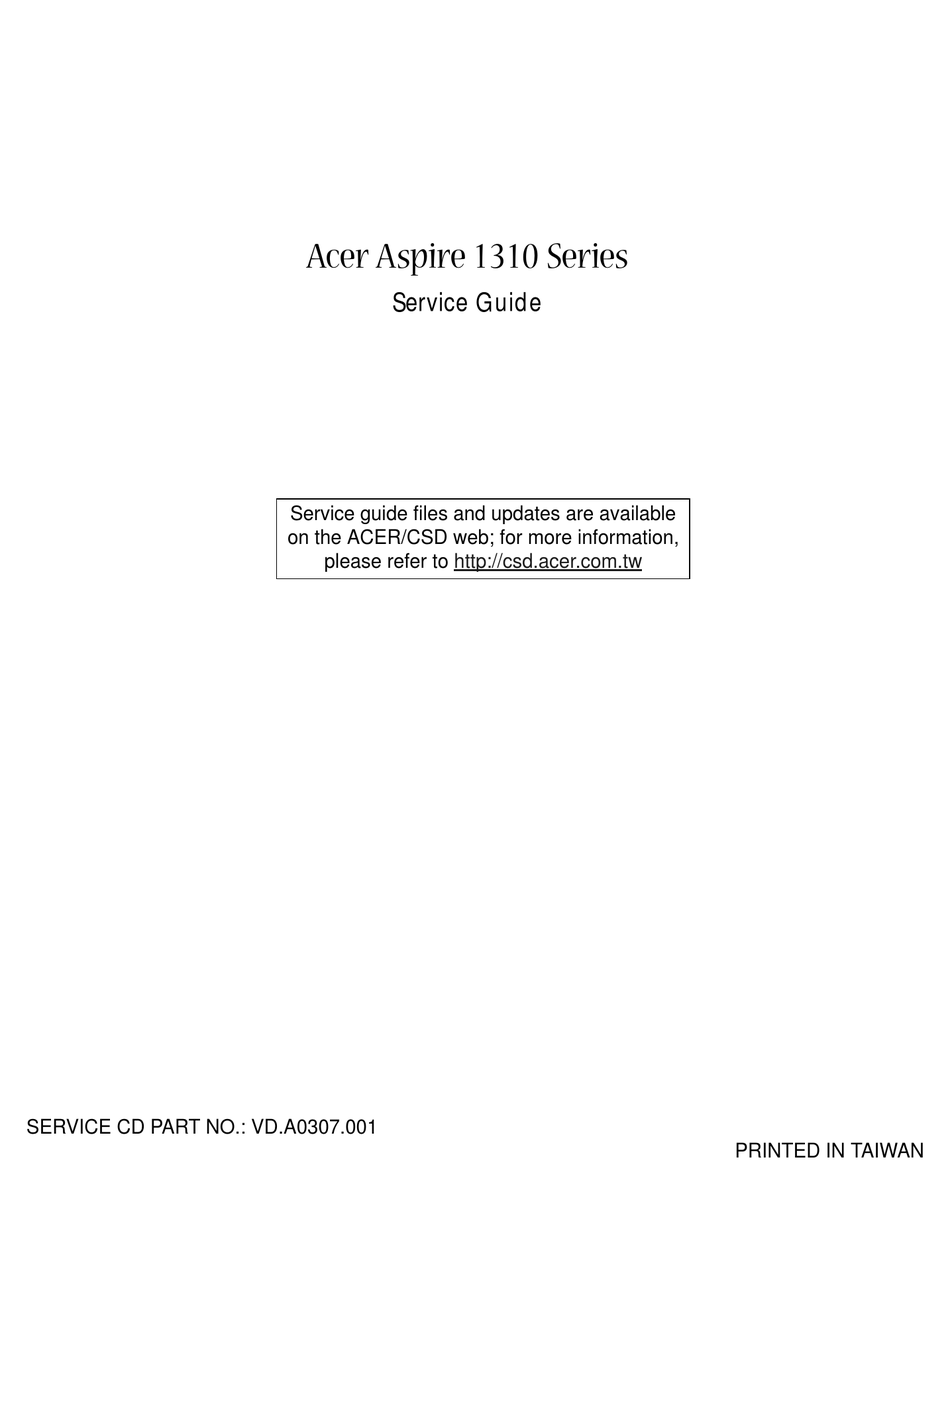 invadir Terraplén Cambio ACER ASPIRE 1310 SERVICE MANUAL Pdf Download | ManualsLib